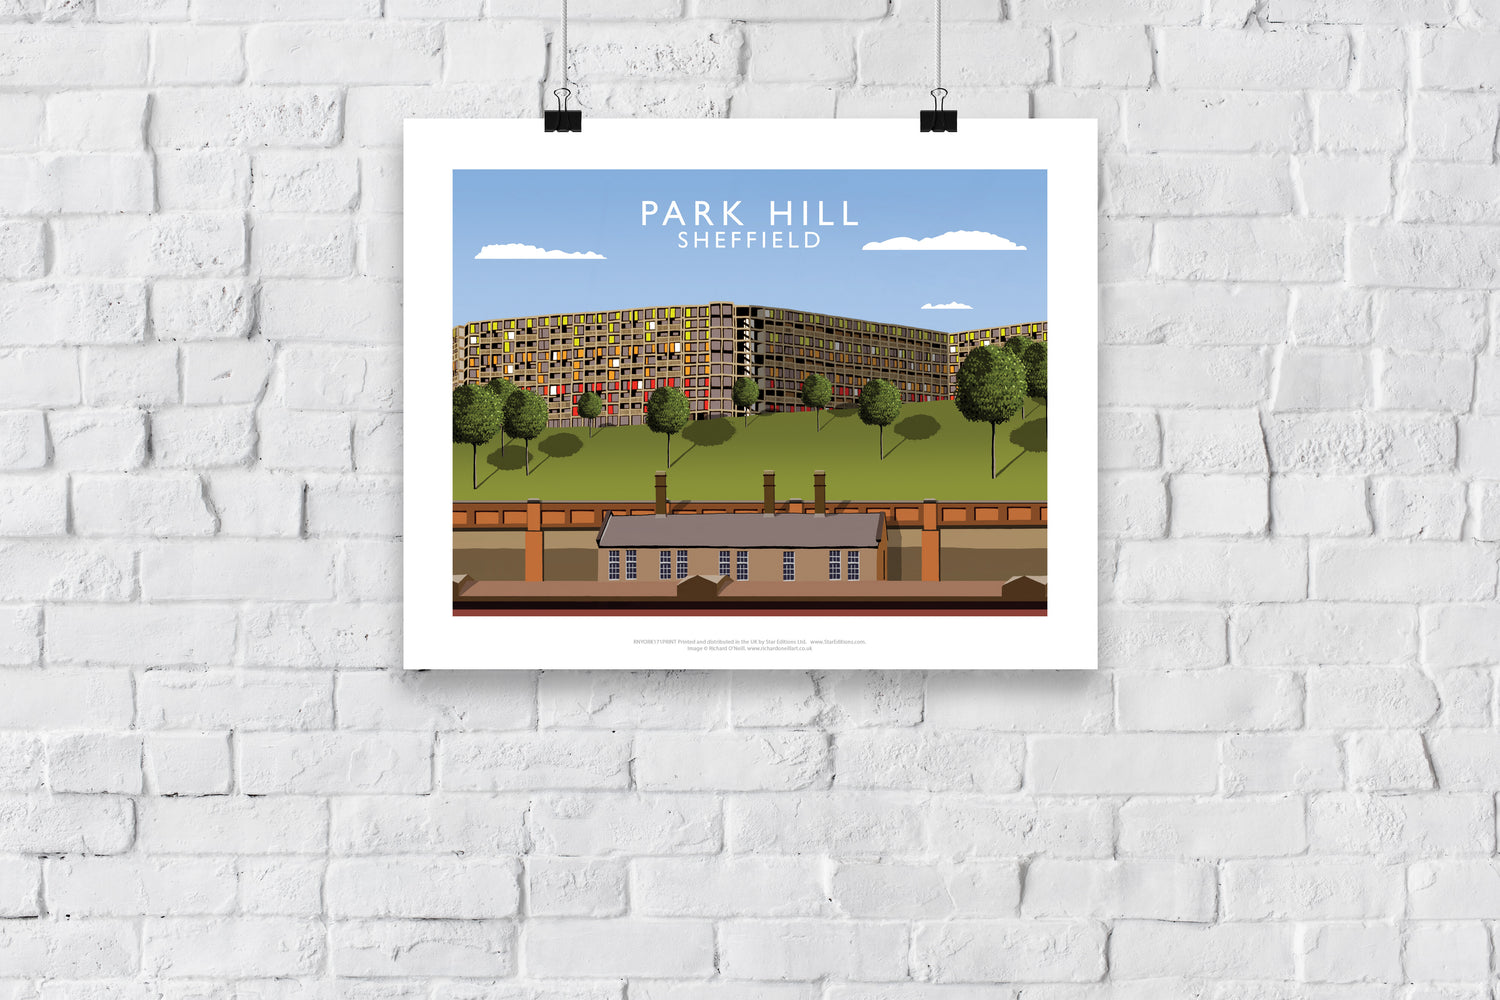 Park Hill, Sheffield - Art Print